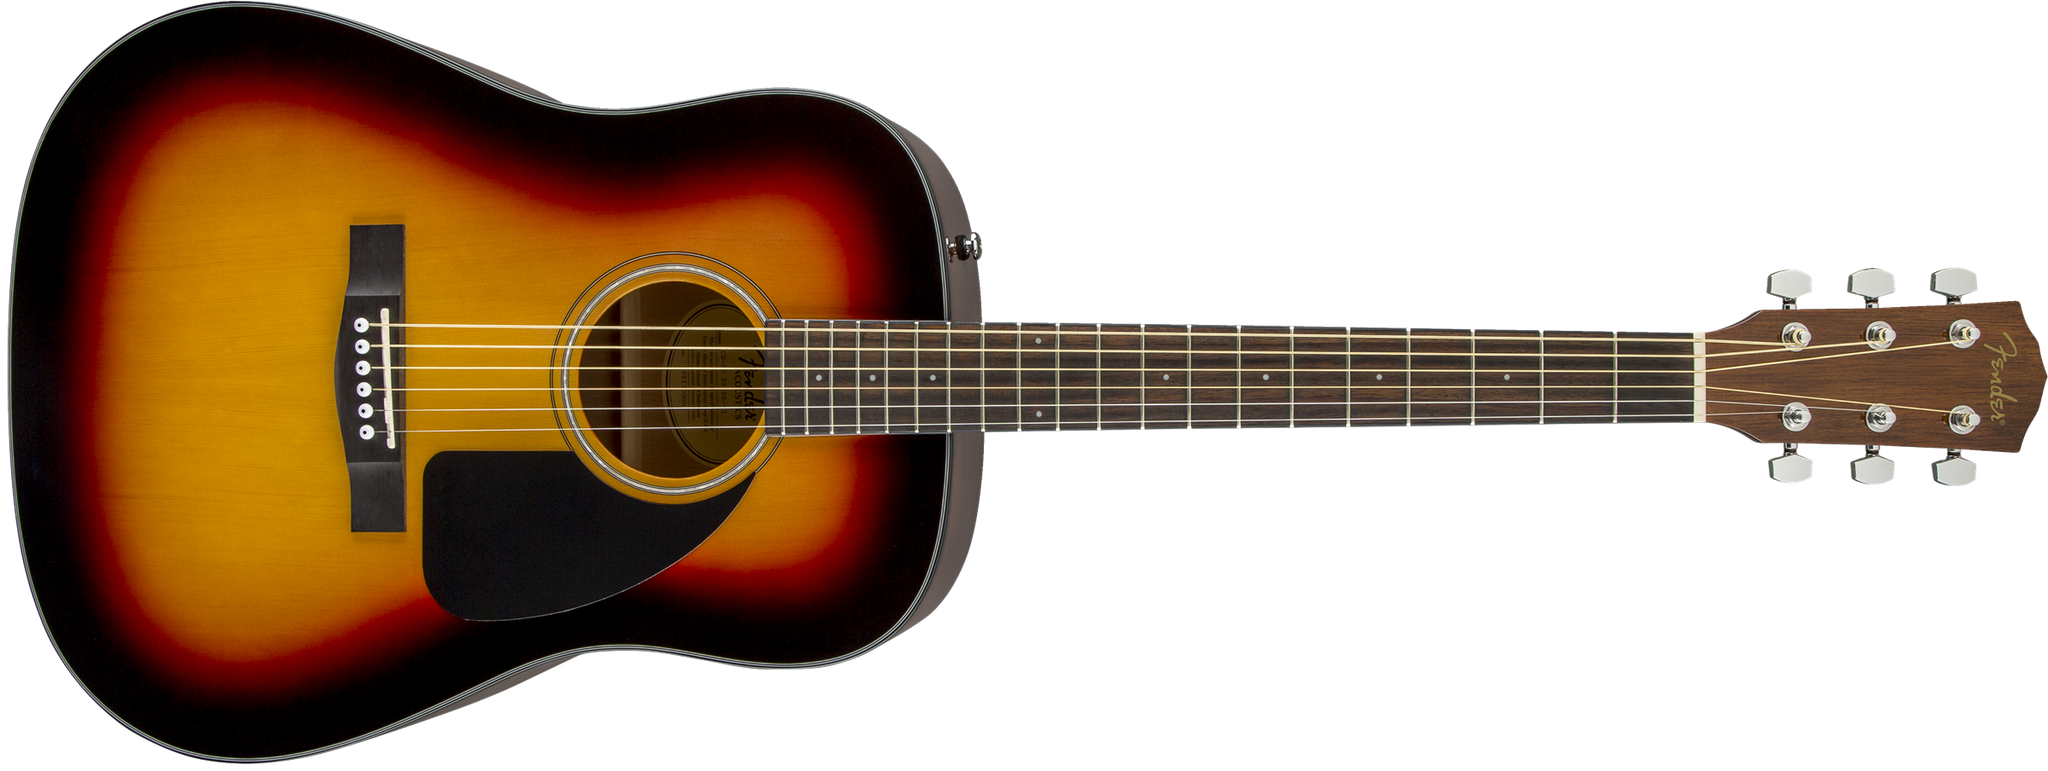 Fender CD-60 Dreadnought Acoustic Guitar. Sunburst